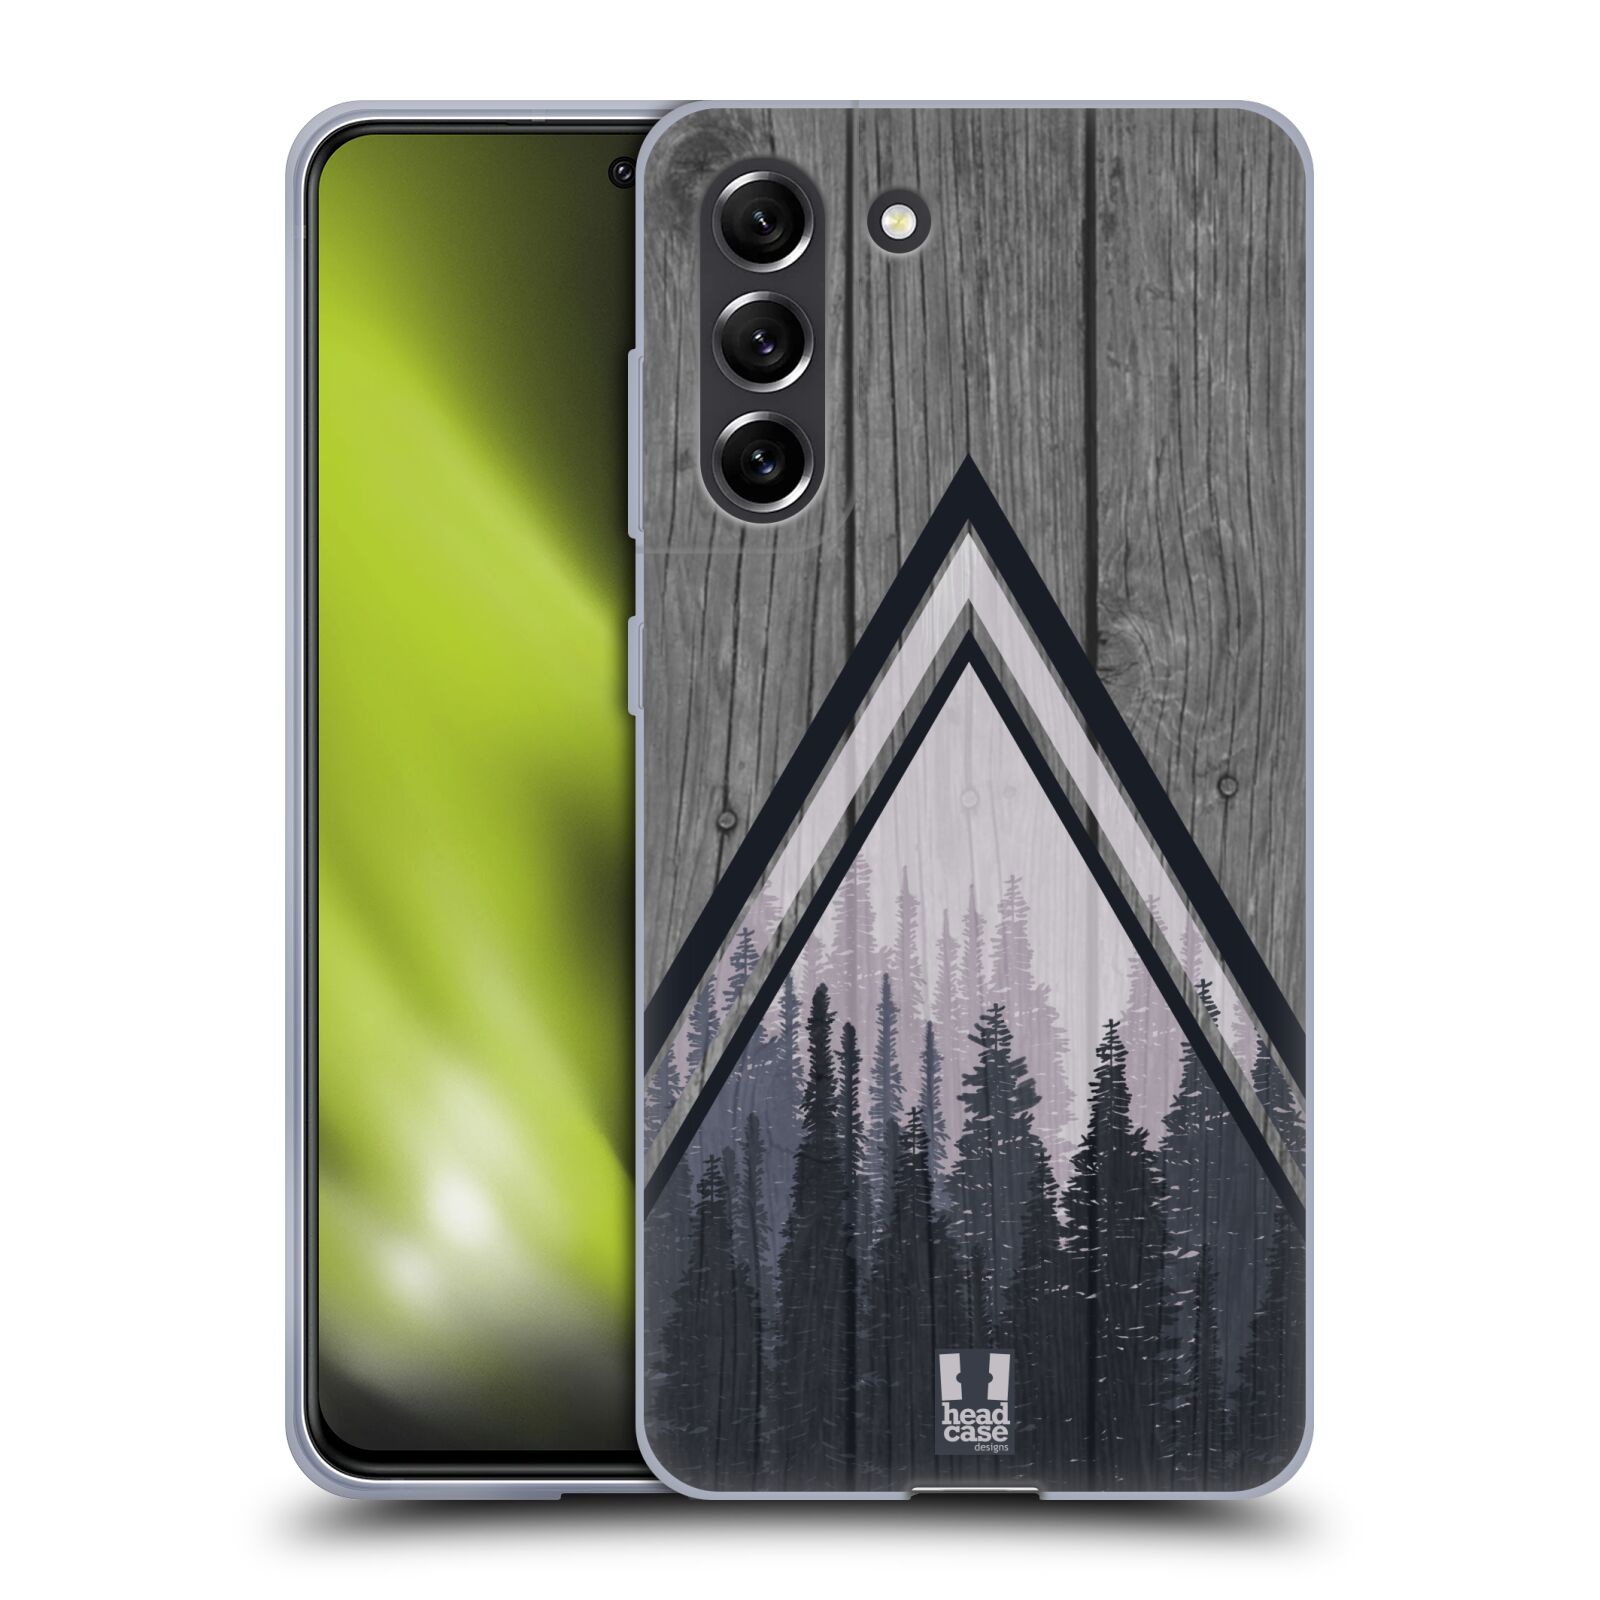 Silikonové pouzdro na mobil Samsung Galaxy S21 FE 5G - Head Case - Dřevo a temný les (Silikonový kryt, obal, pouzdro na mobilní telefon Samsung Galaxy S21 FE 5G s motivem Dřevo a temný les)